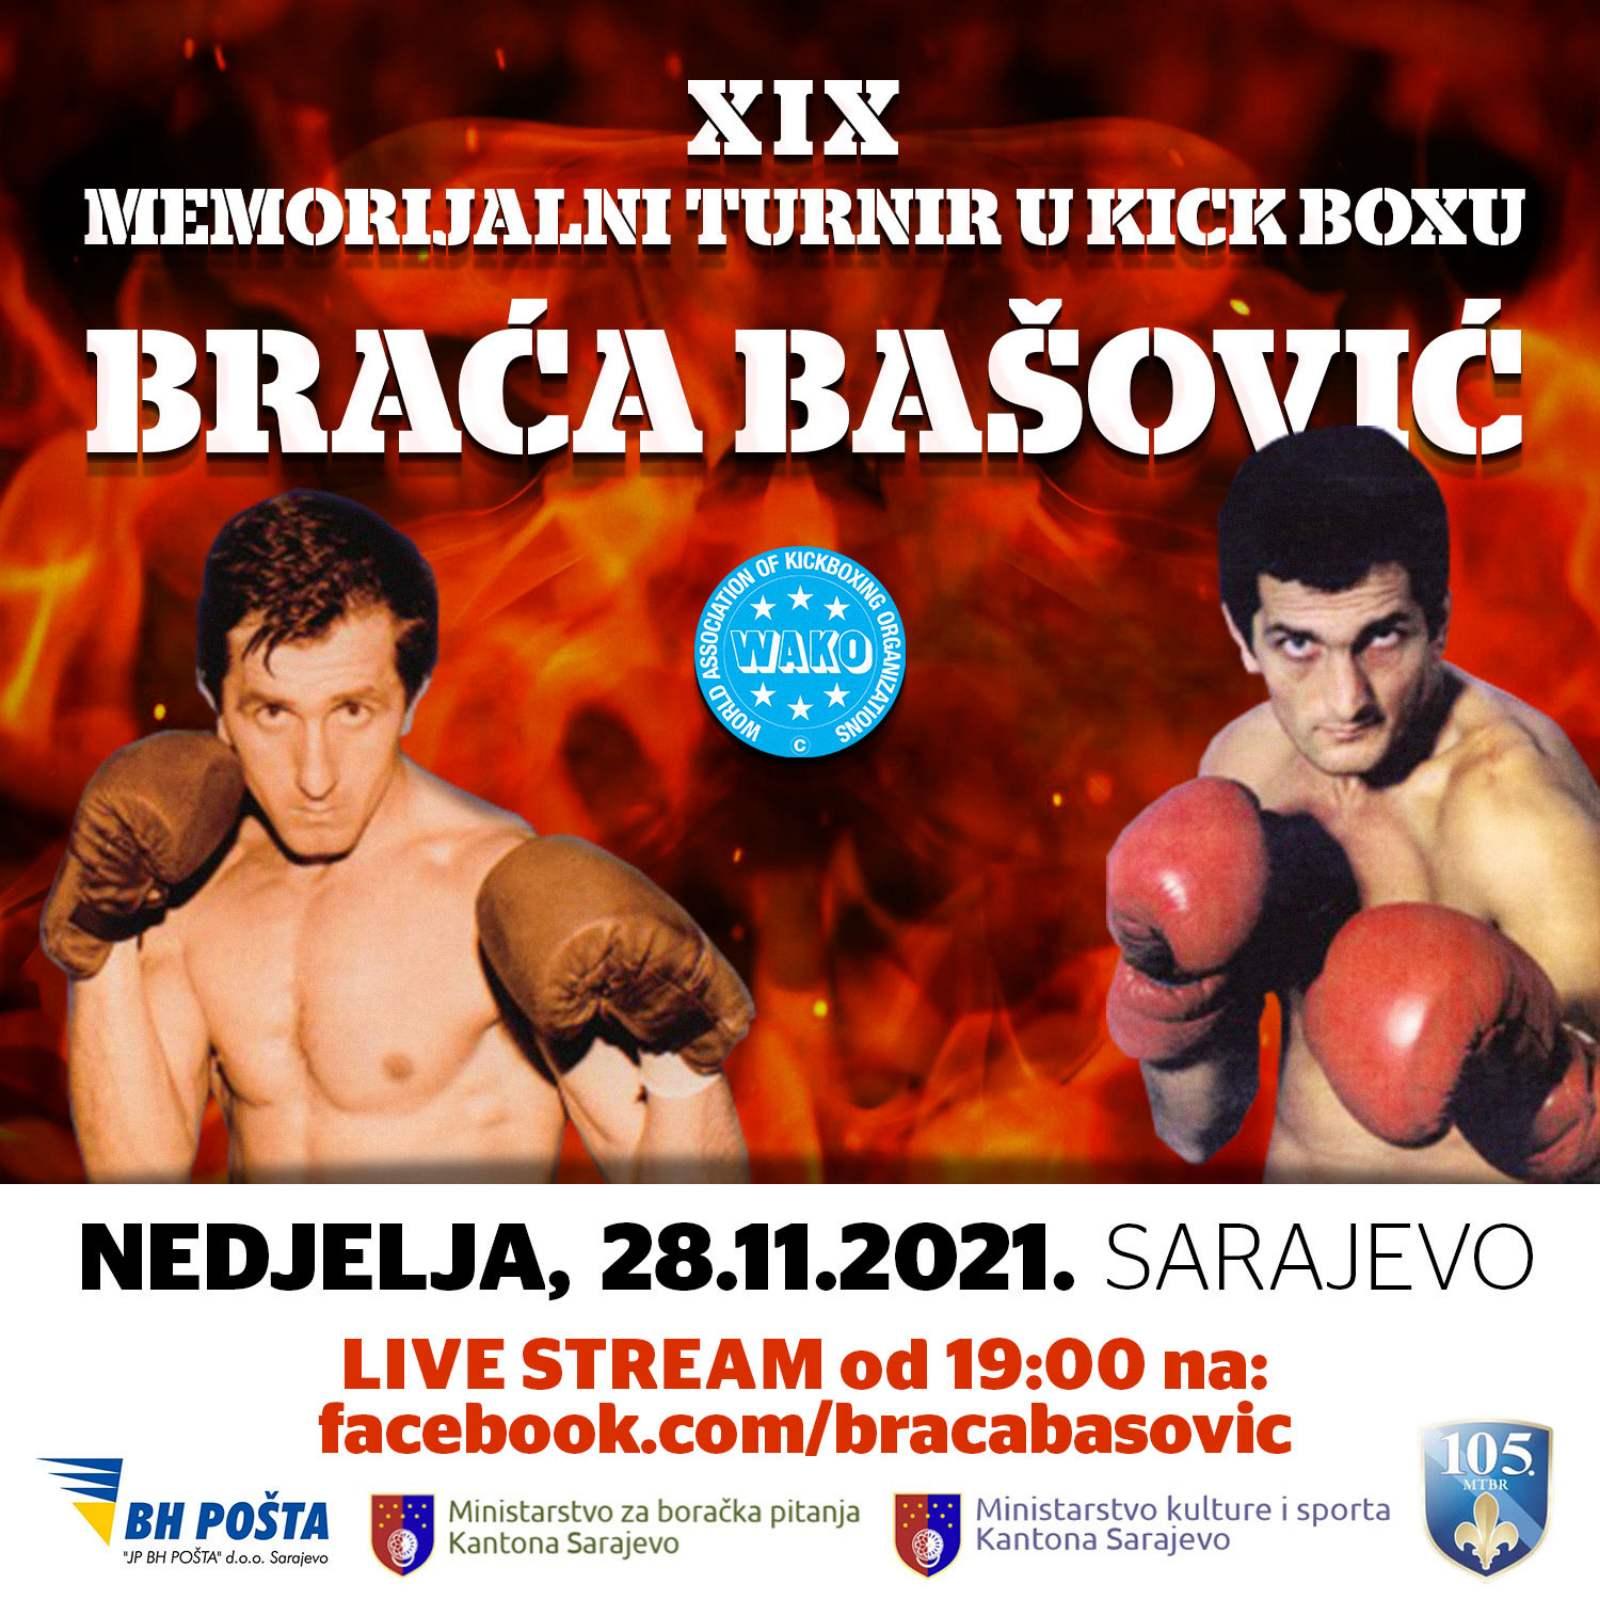 Svi zainteresovani turnir mogu pratiti od 19 sati putem live streama na facebook stranici kluba: fb.com/bracabasovic - Avaz